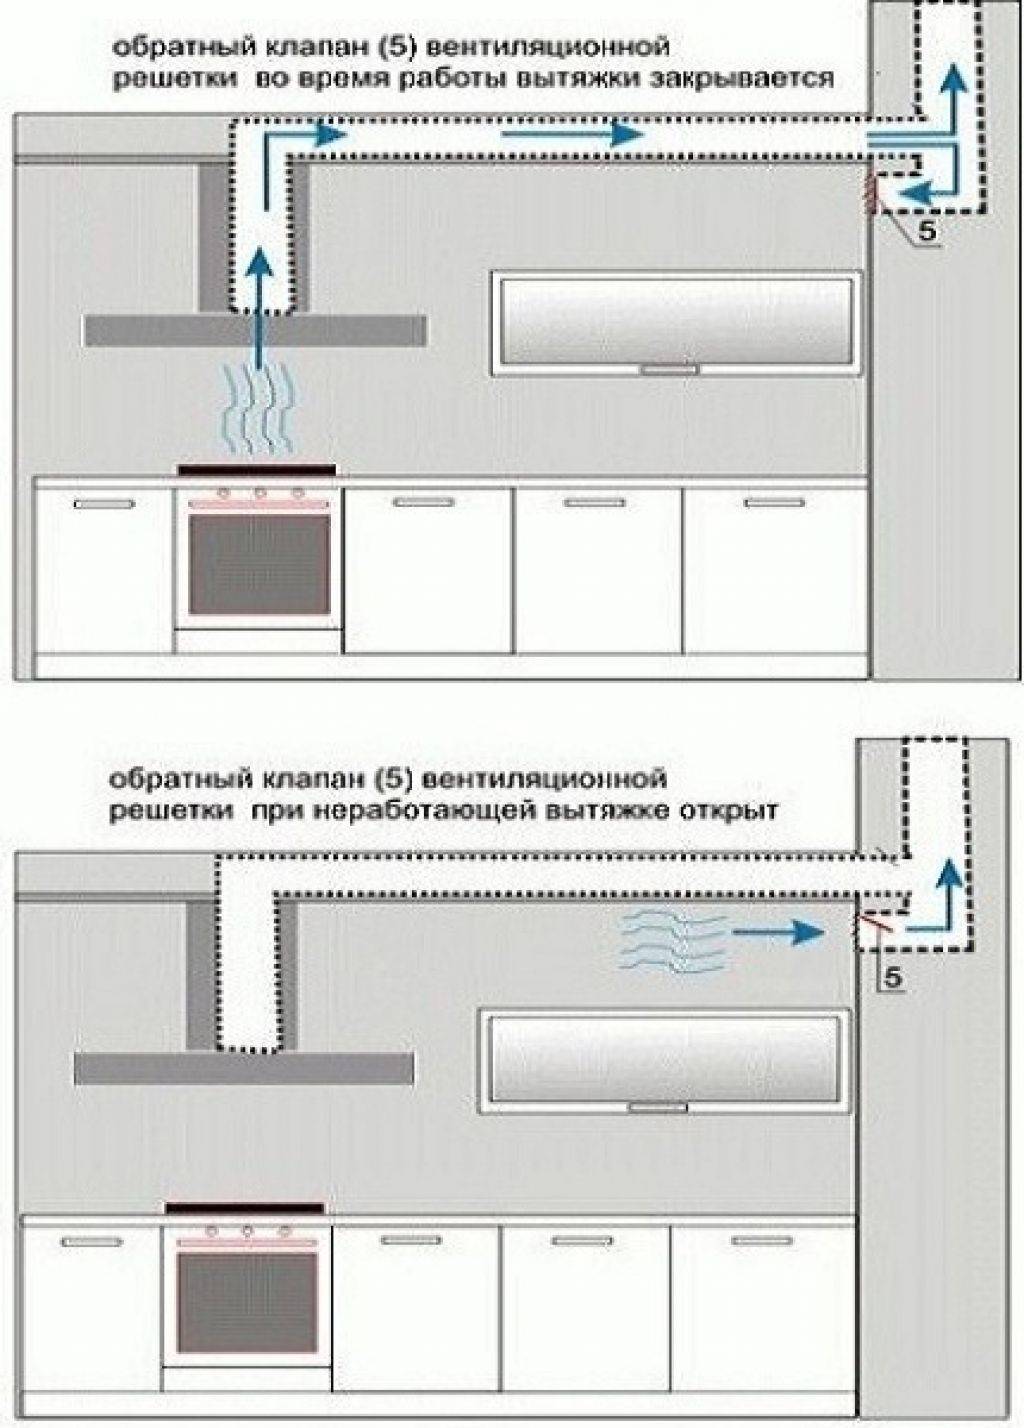 Перенос вентиляции на кухне: нормы и правила переноса вентиляционного отверстия - все об инженерных системах